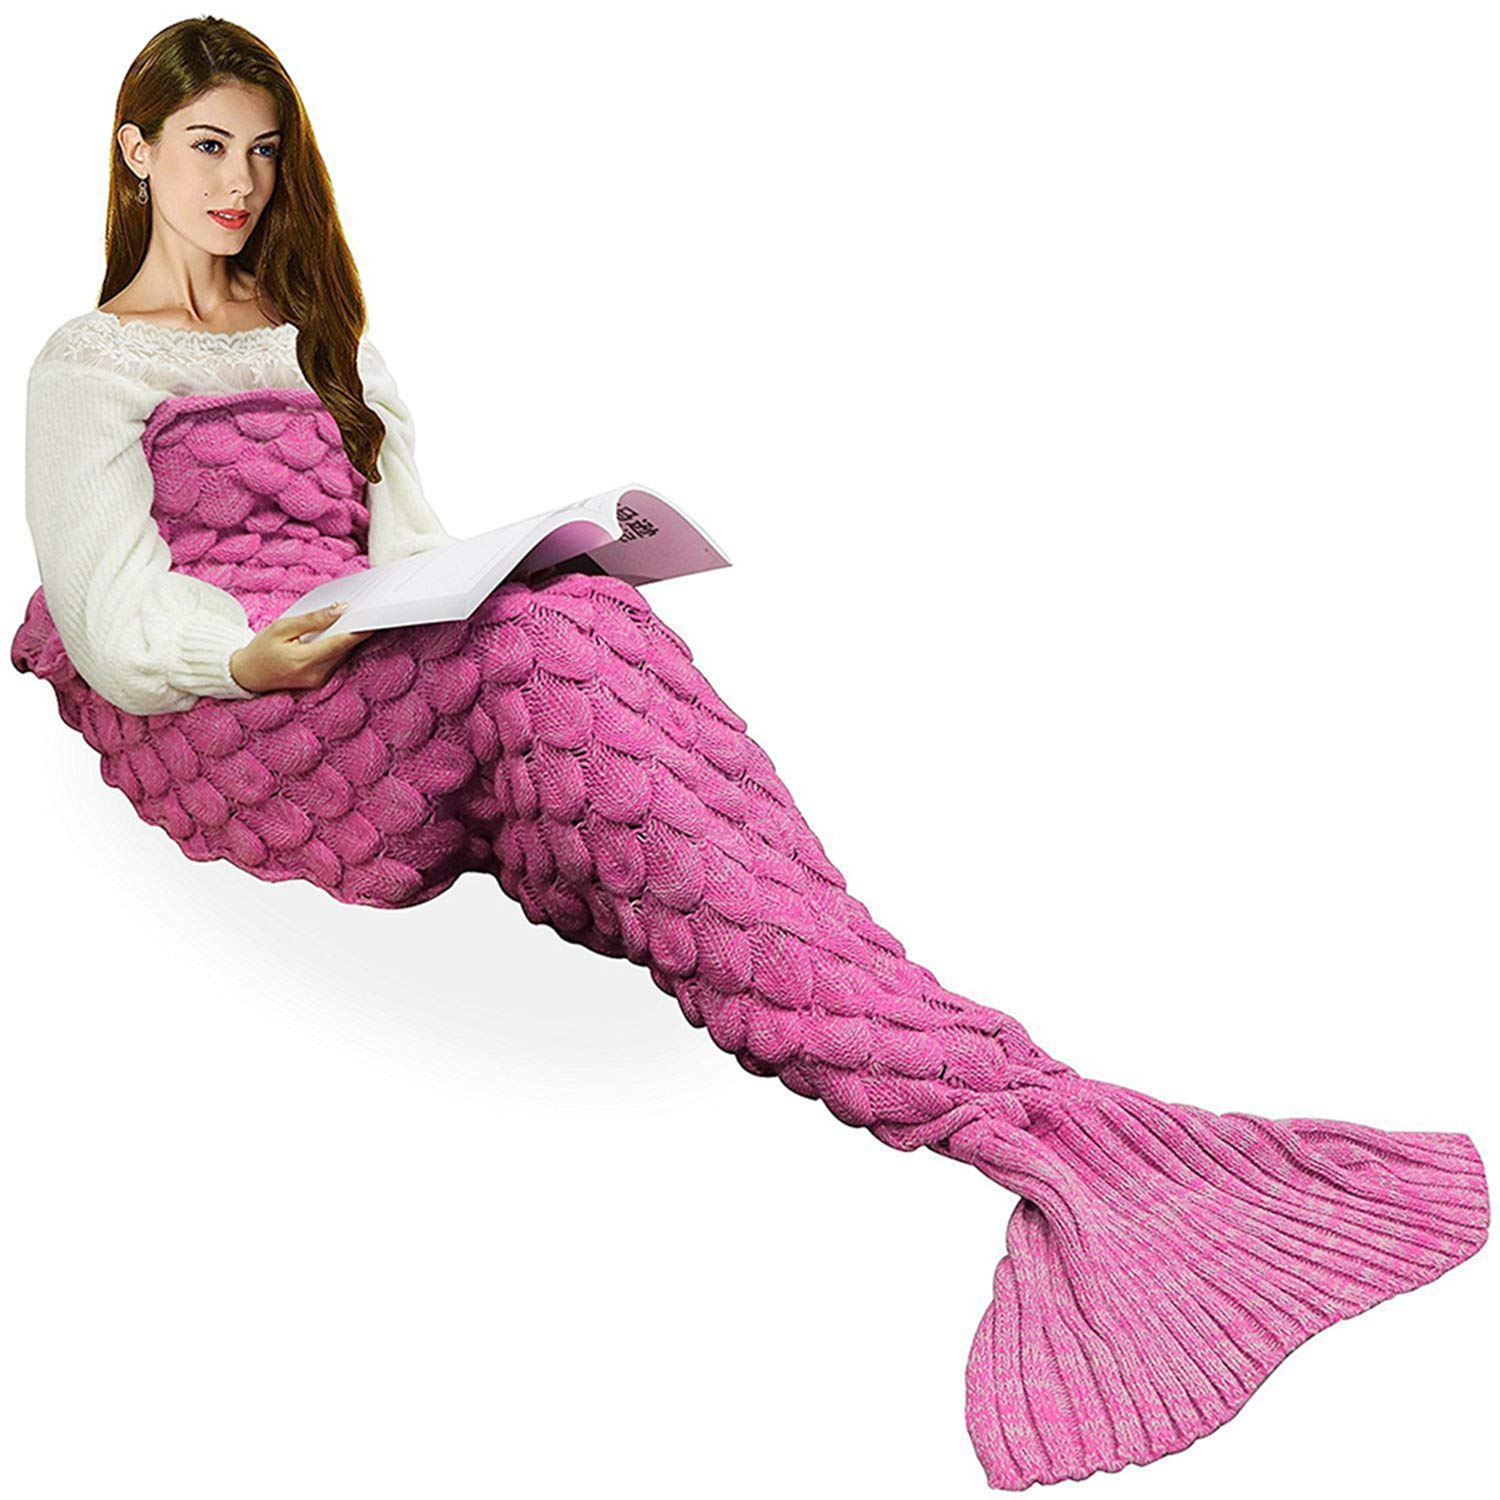 Top 11 Best Mermaid Tail Blankets for Kids Reviews in 2022 10